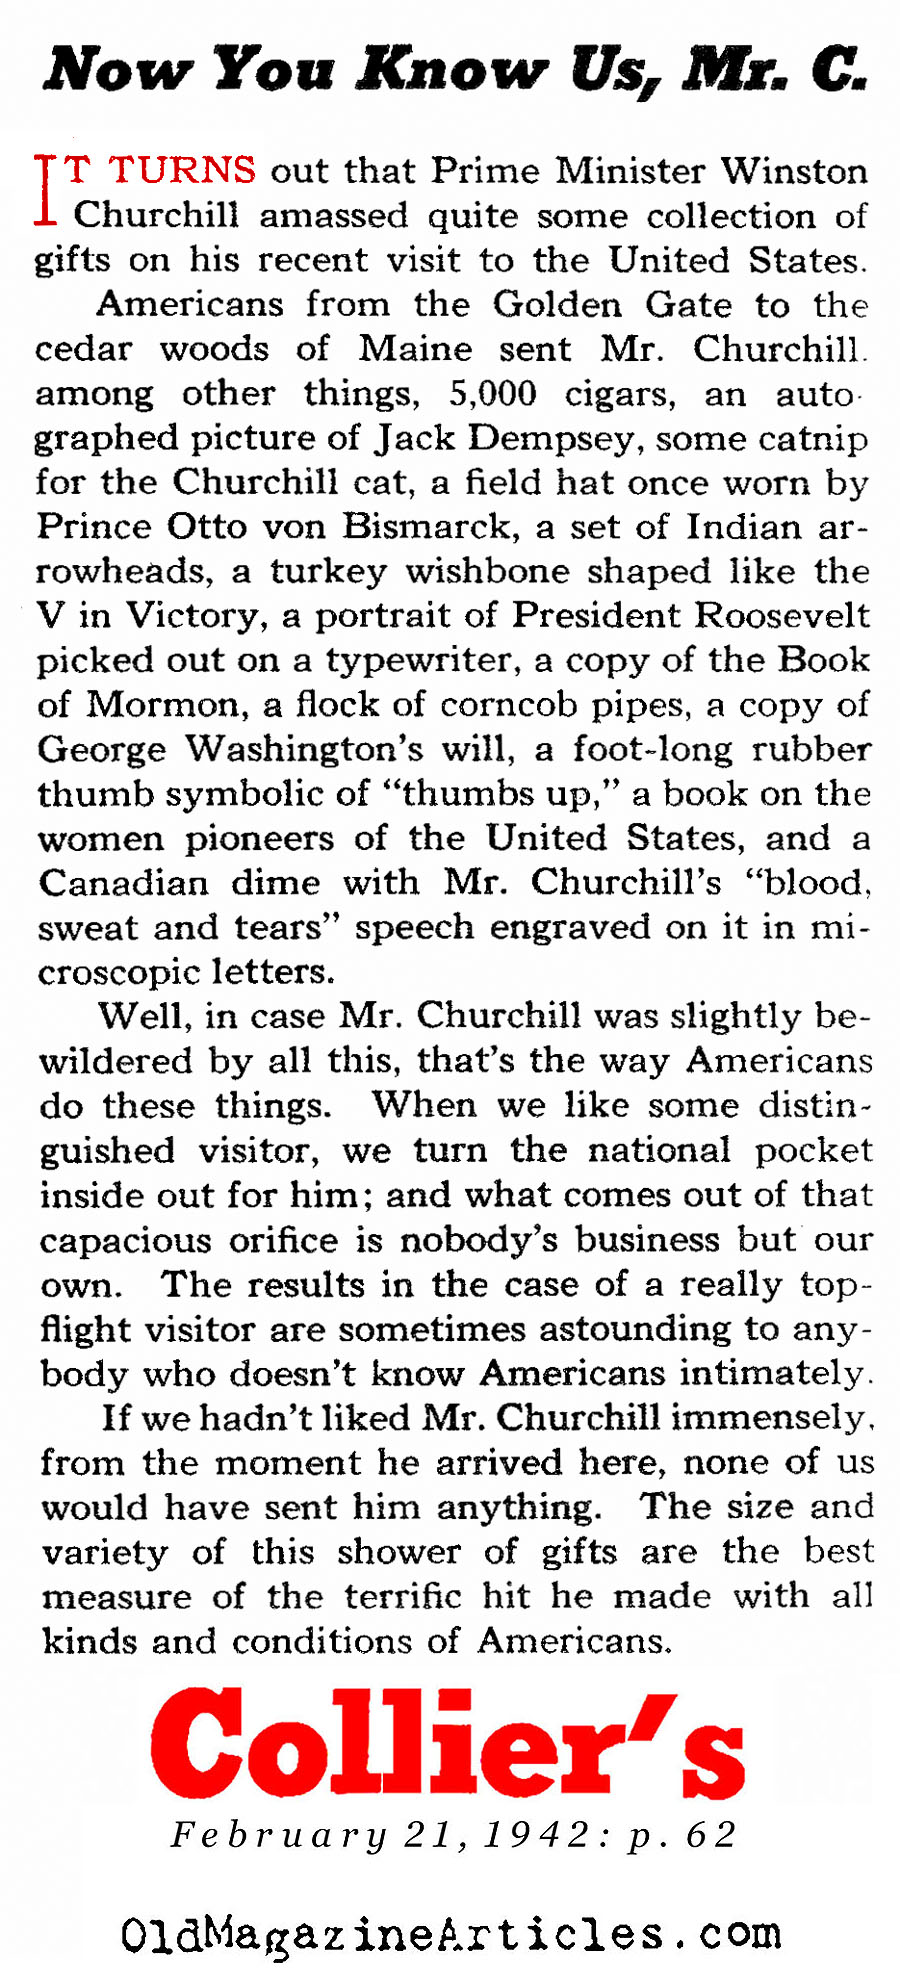 Americans ♥ Winston Churchill (Collier's Magazine, 1942)